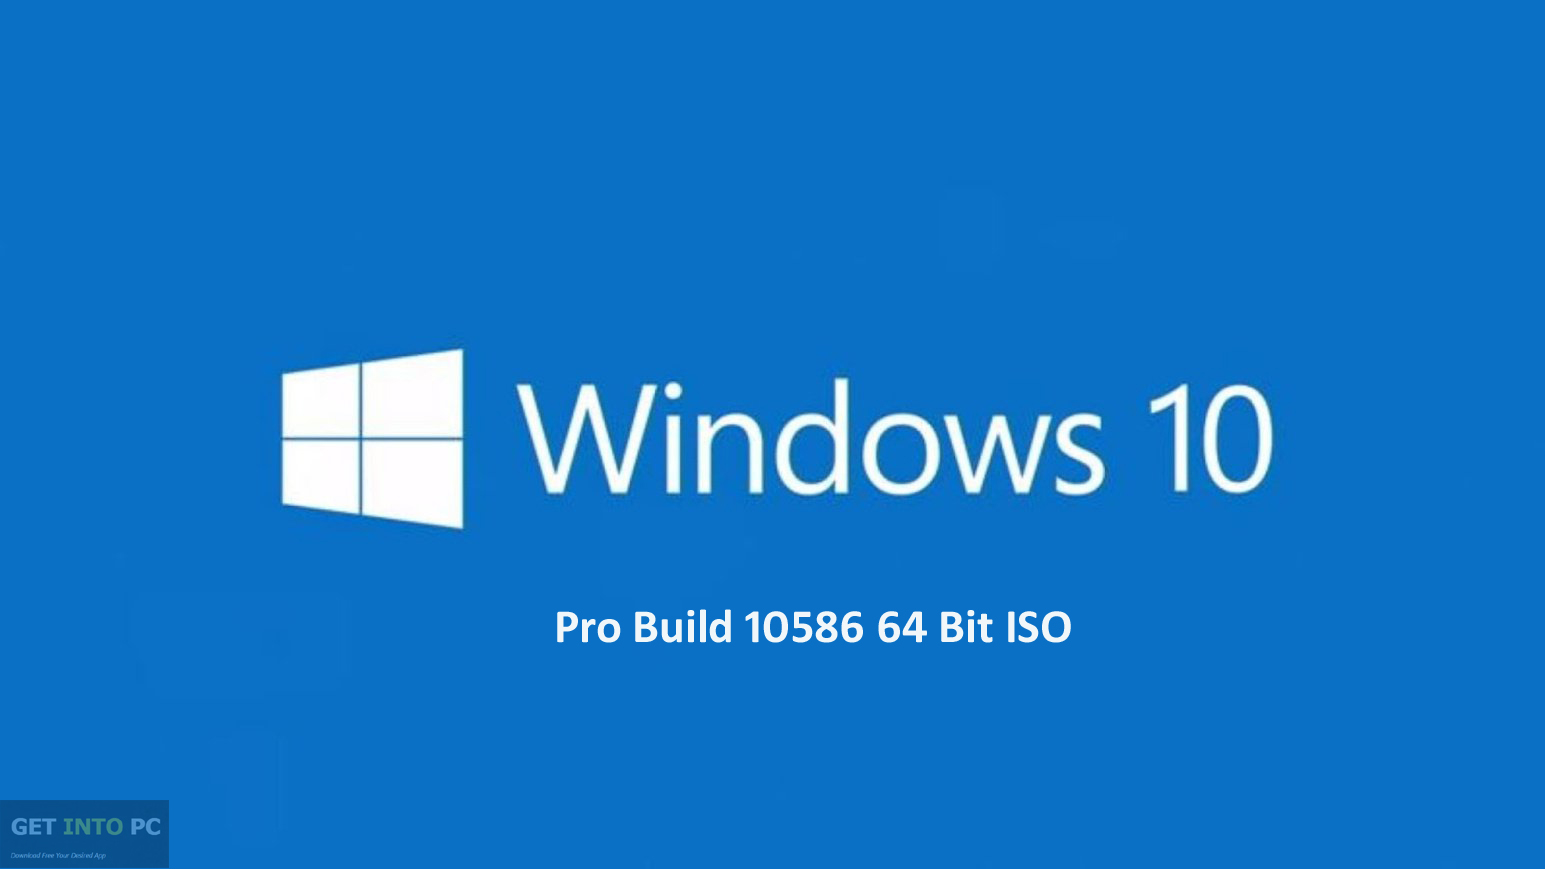 windows 10 pro iso torrent download